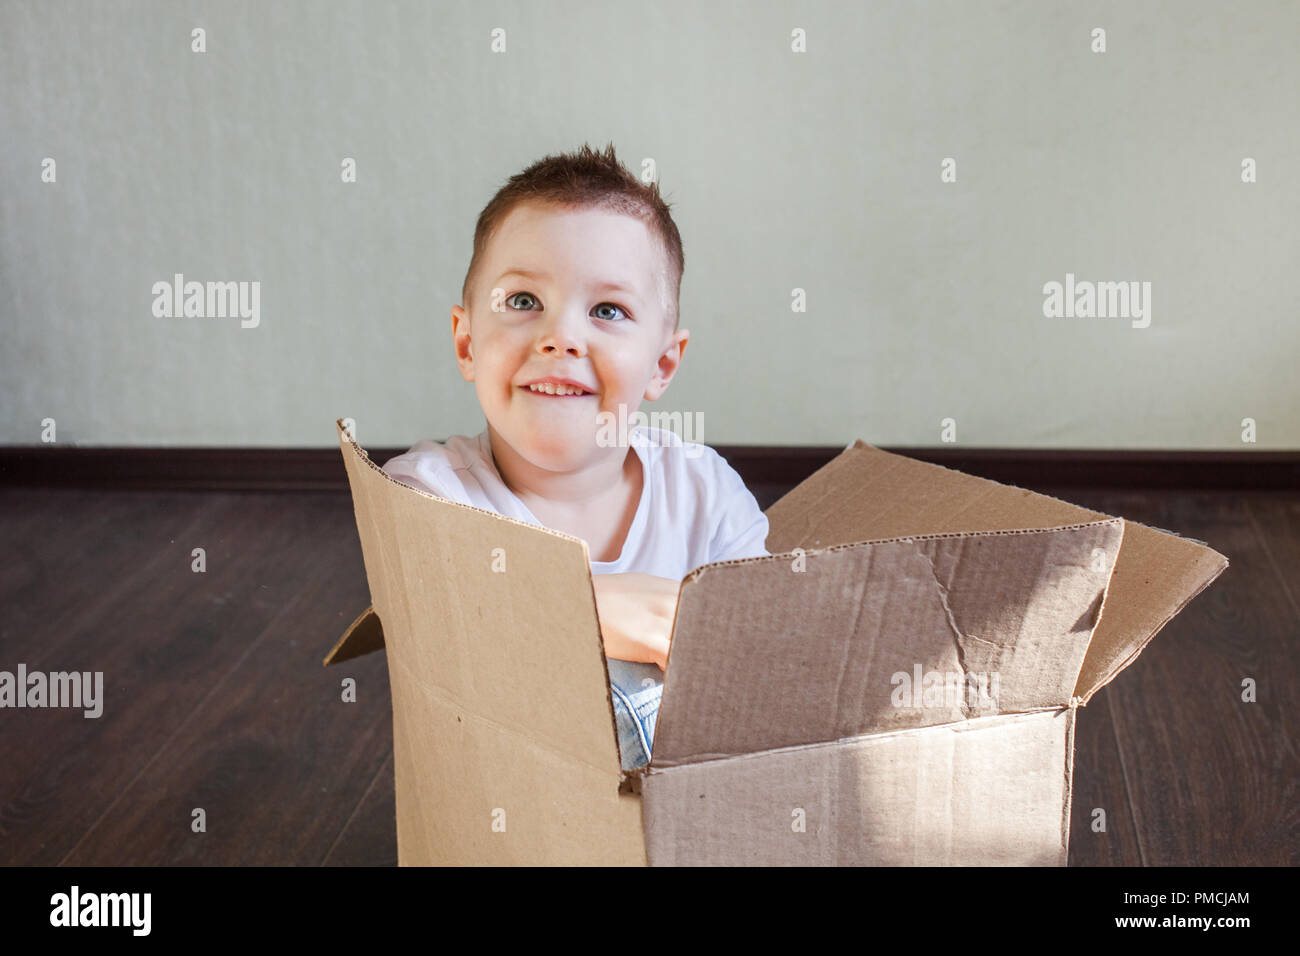 Garçon 4 ans homme blond assis dans une boîte en carton à la maison et souriant, sincère émotion et plaisir Banque D'Images